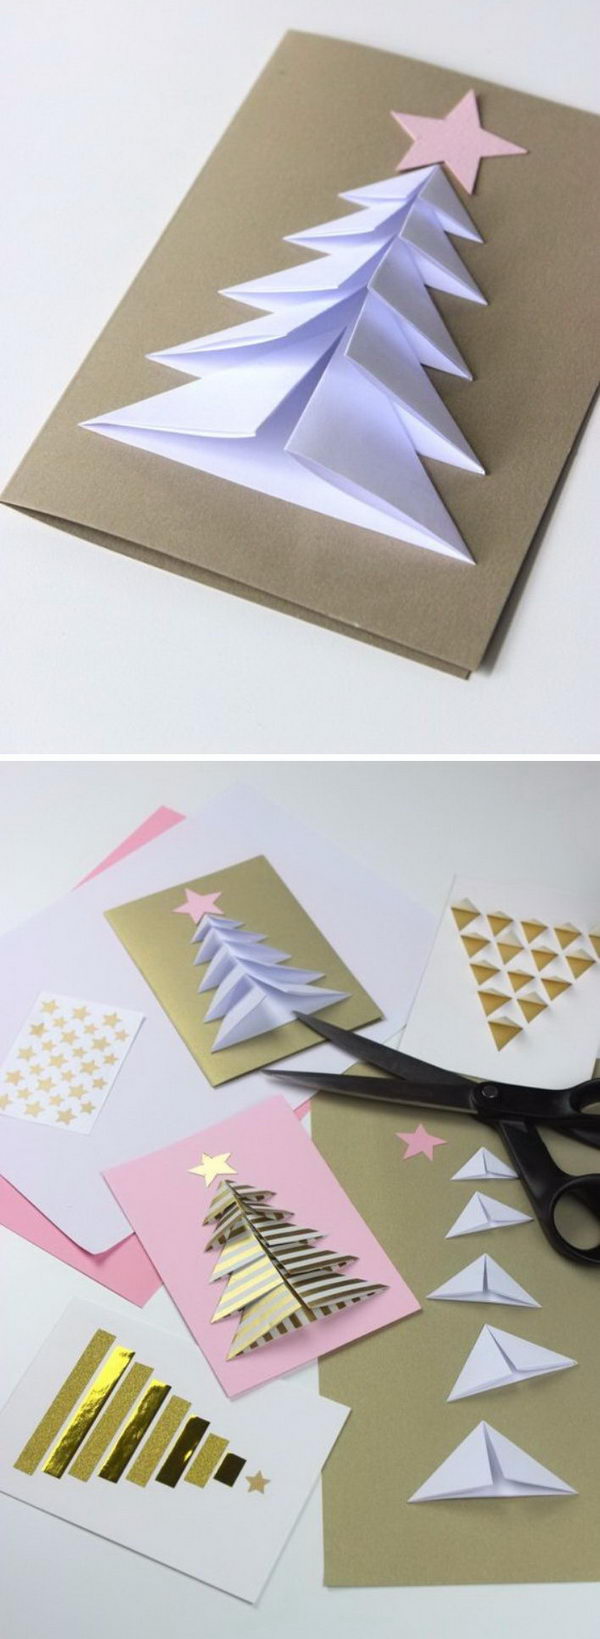 20 Handmade Christmas Card Ideas